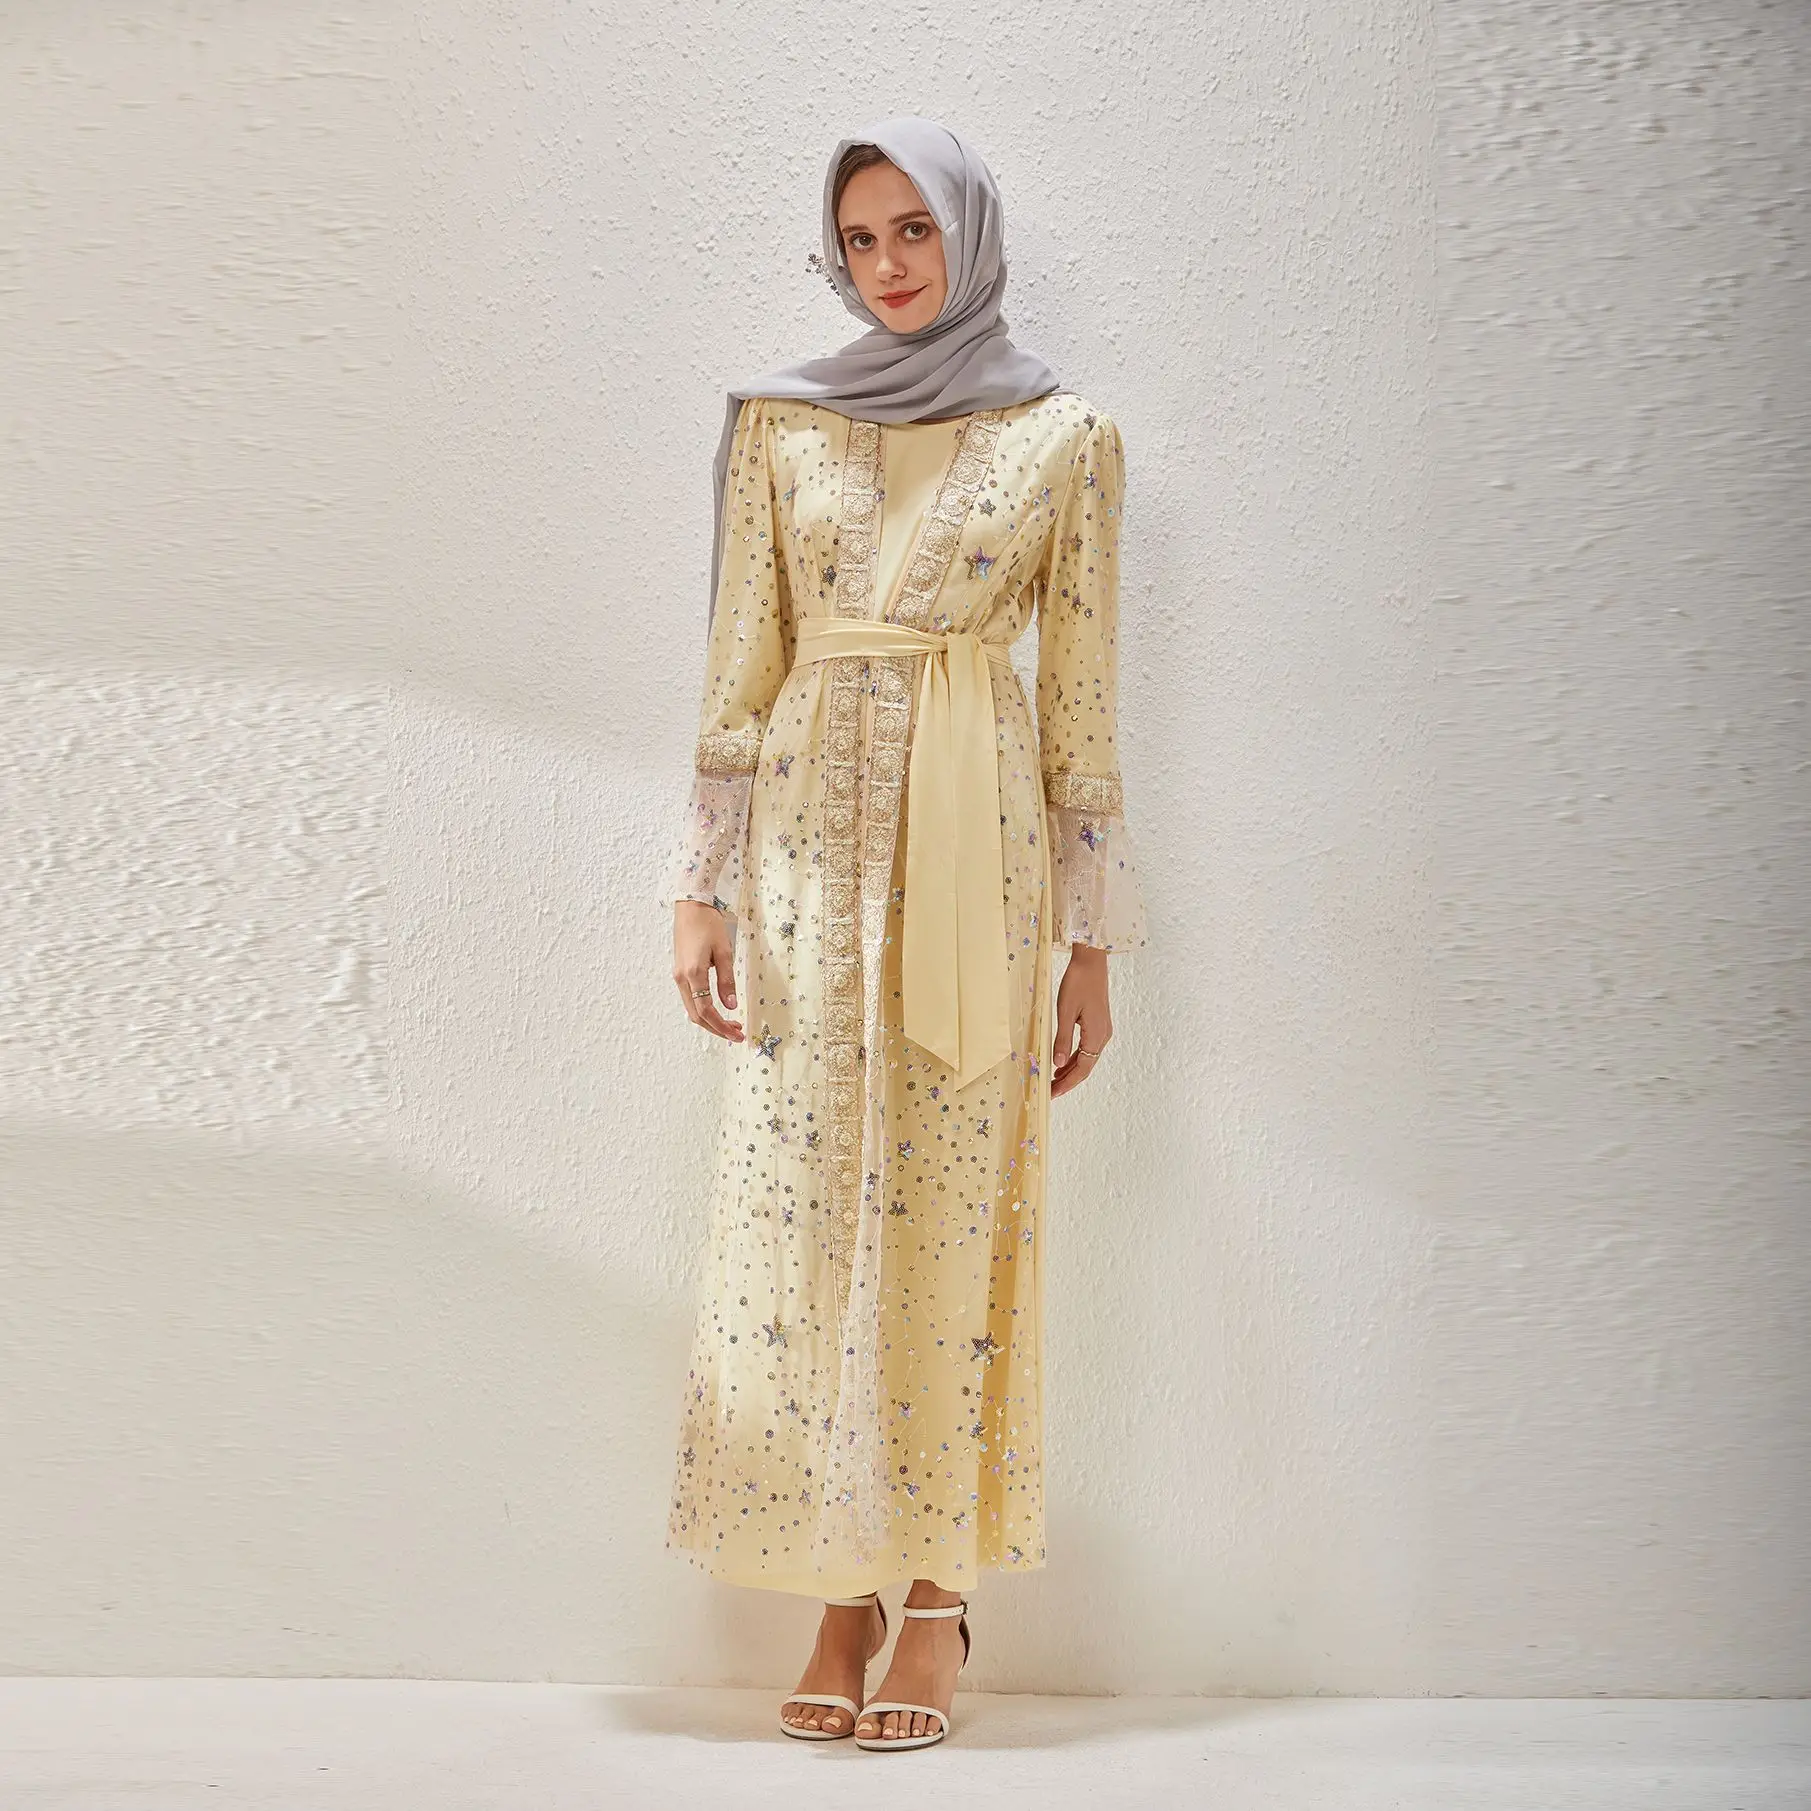 Falsos Duas Peças Eid Djellaba Abaya Comprimento Total Bordado Vestido de Muçulmano Dubai, Turquia Muçulmana Vestido Islã Abayas Com Cinto WY113